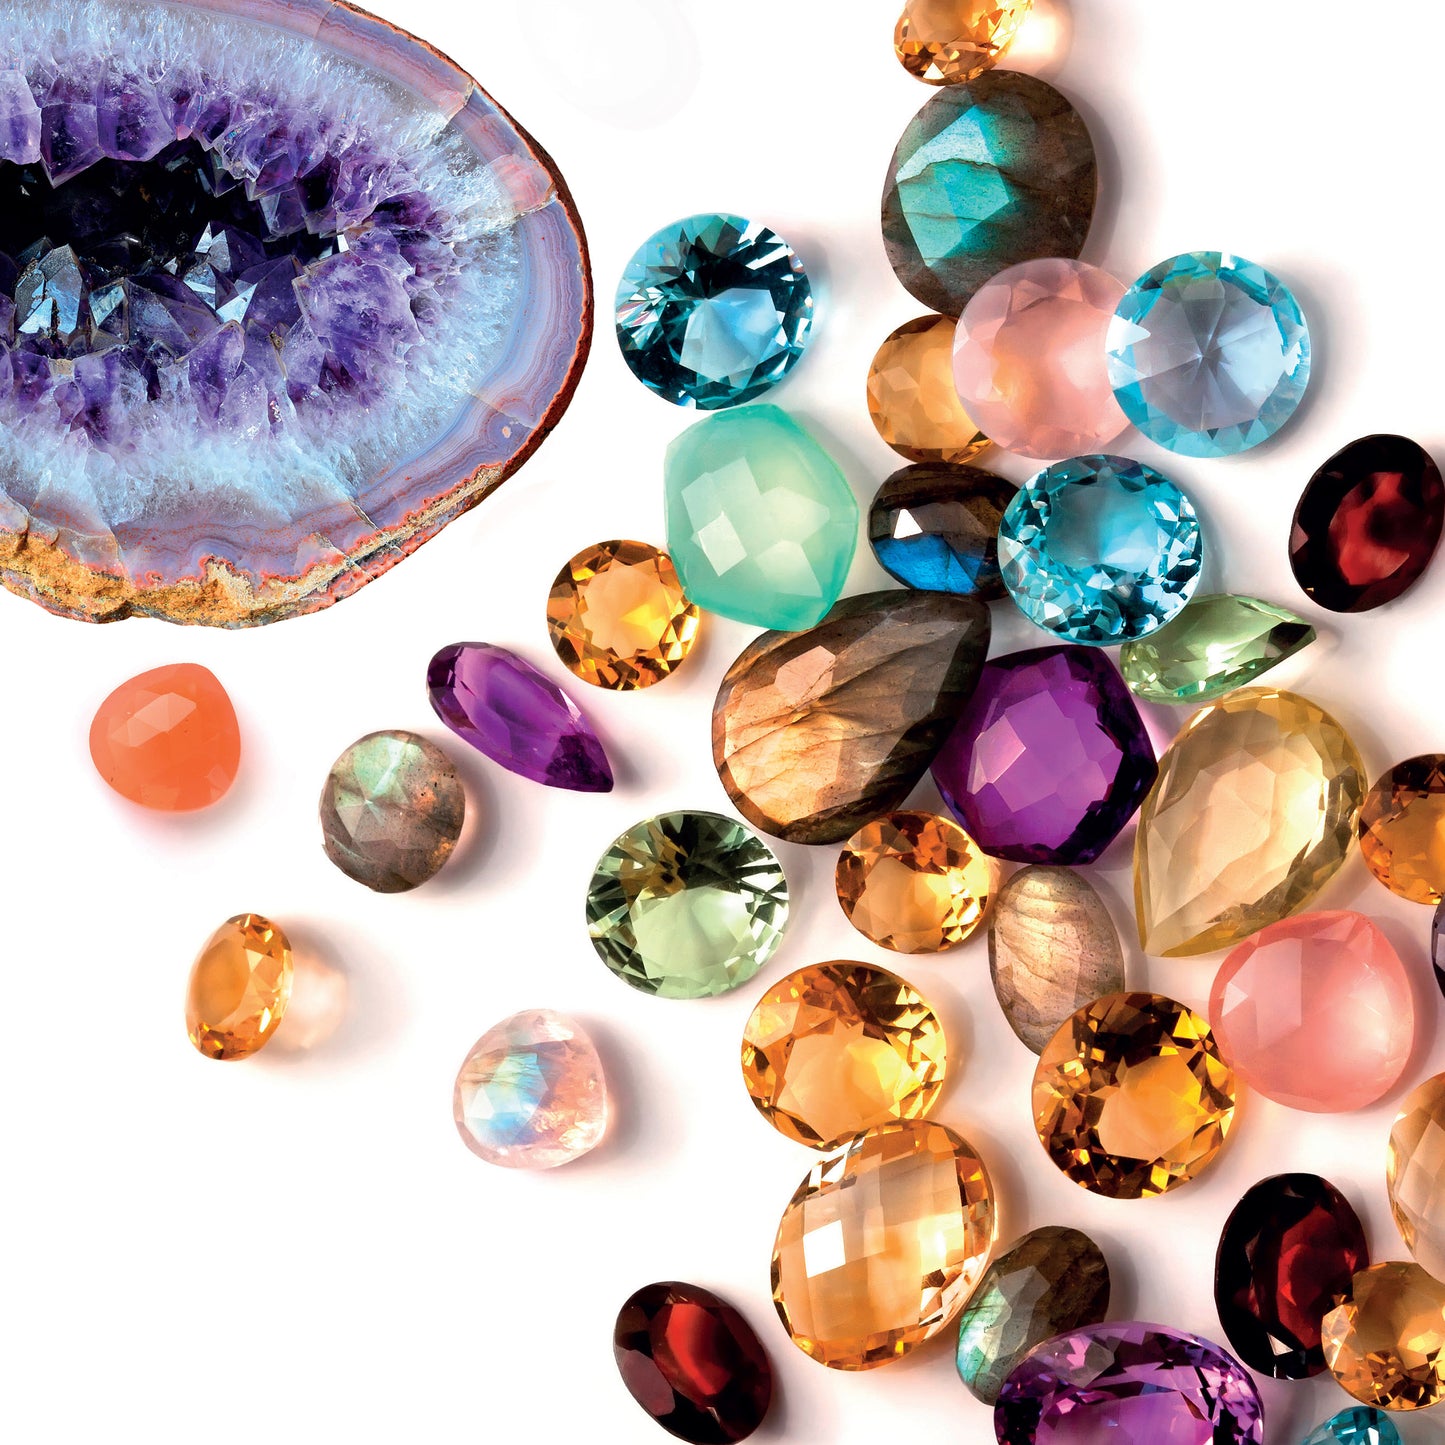 Dig & Discover Gemstones Kit